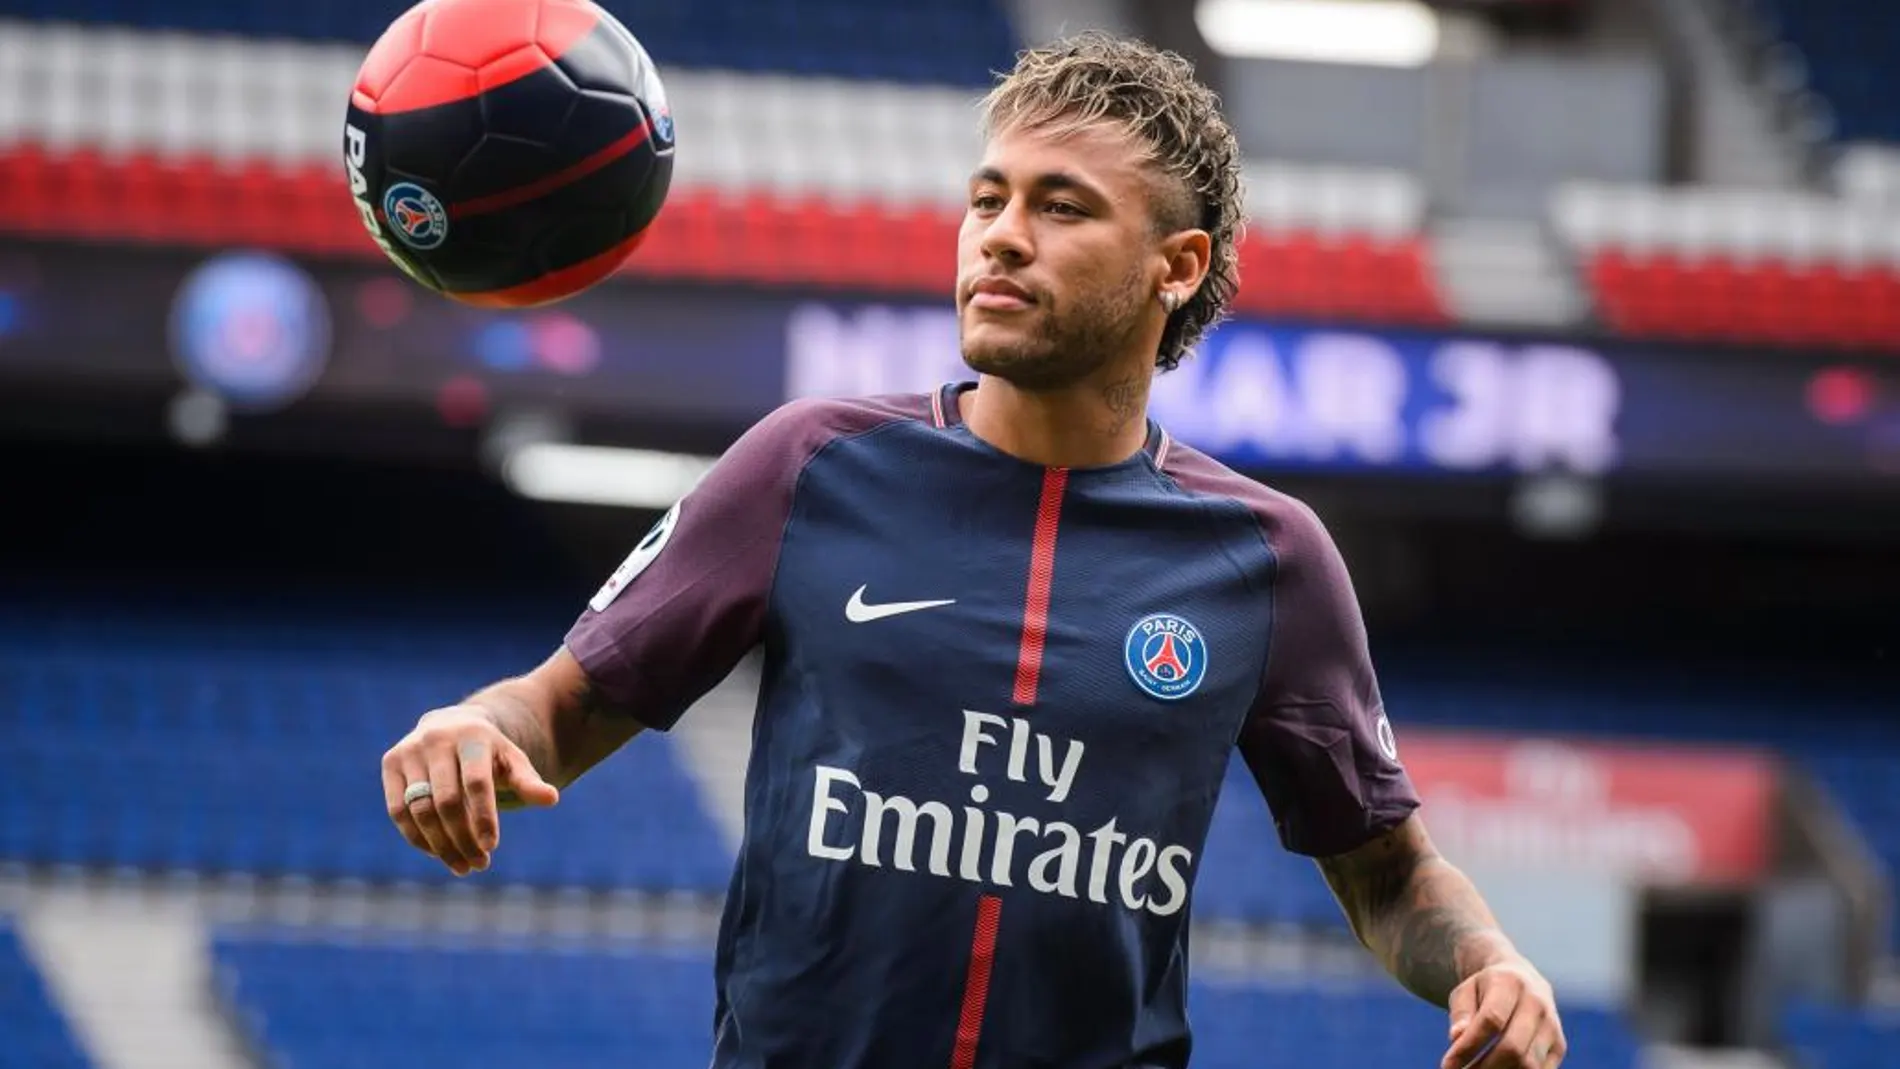 El delantero brasileño Neymar Jr posa para los fotógrafos durante su presentación como nuevo jugador del equipo francés París Saint-Germain (PSG).